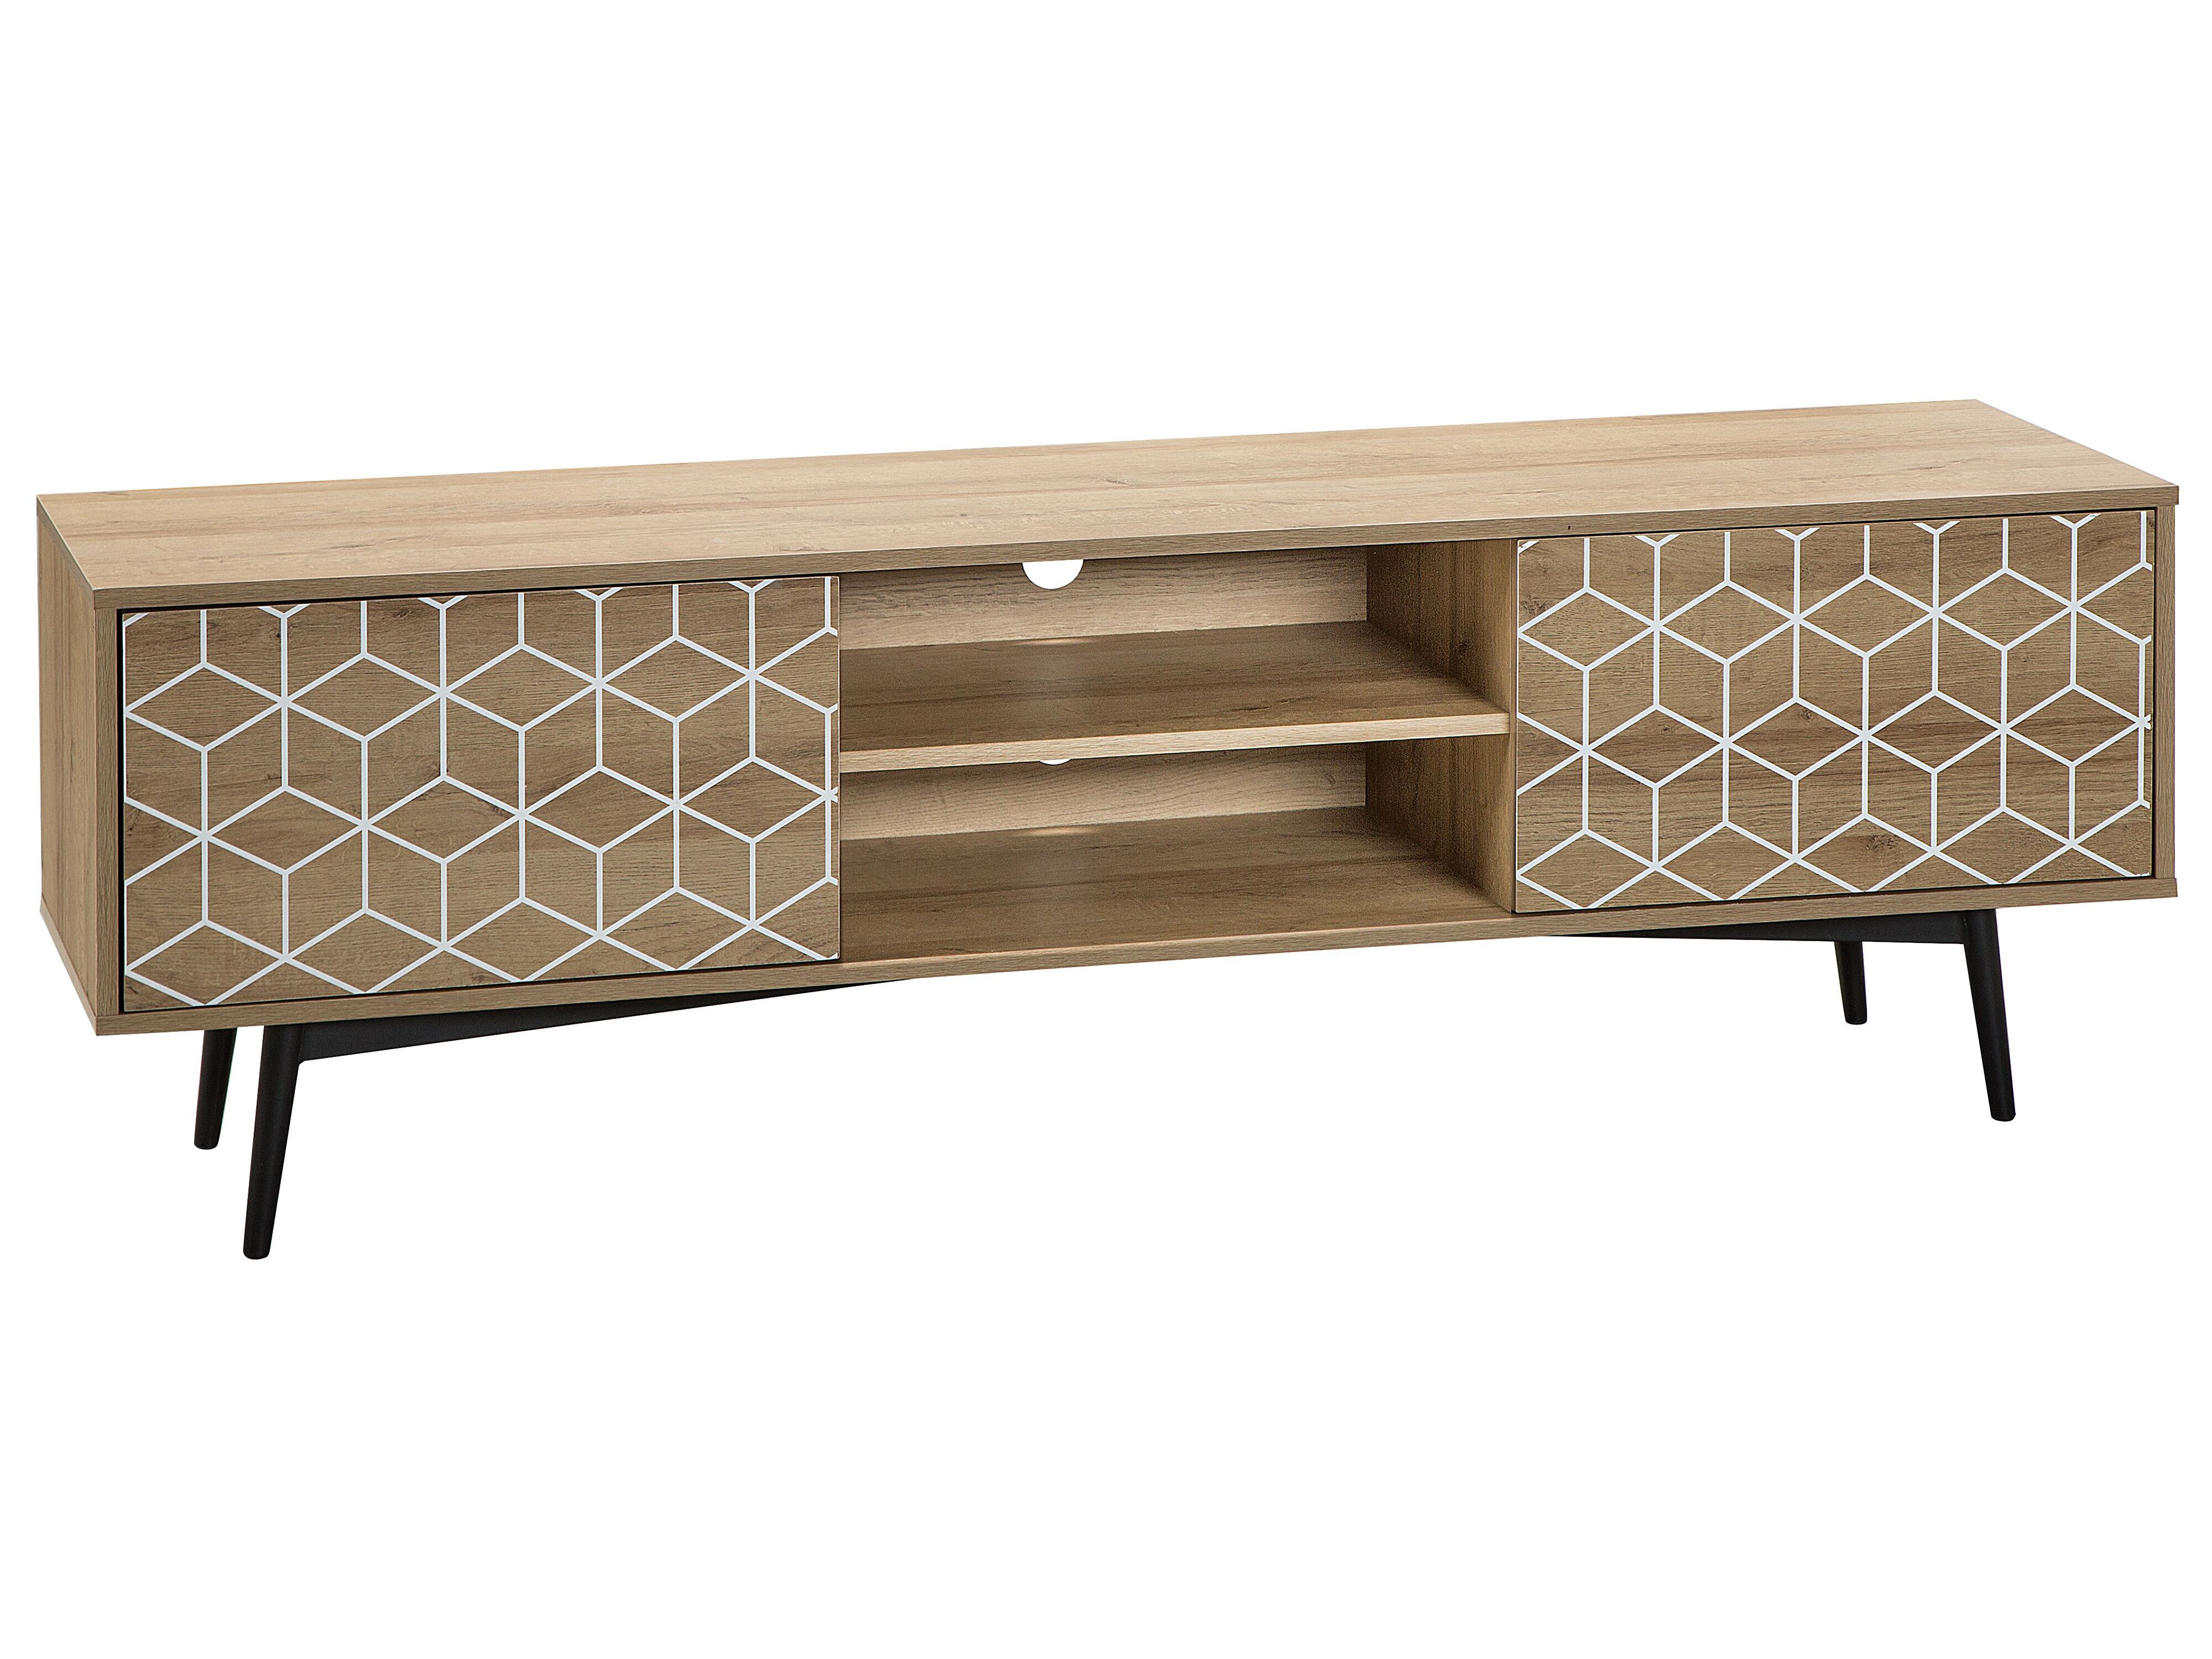 Muebles modernos de Mantel con armario de madera Soporte de TV con